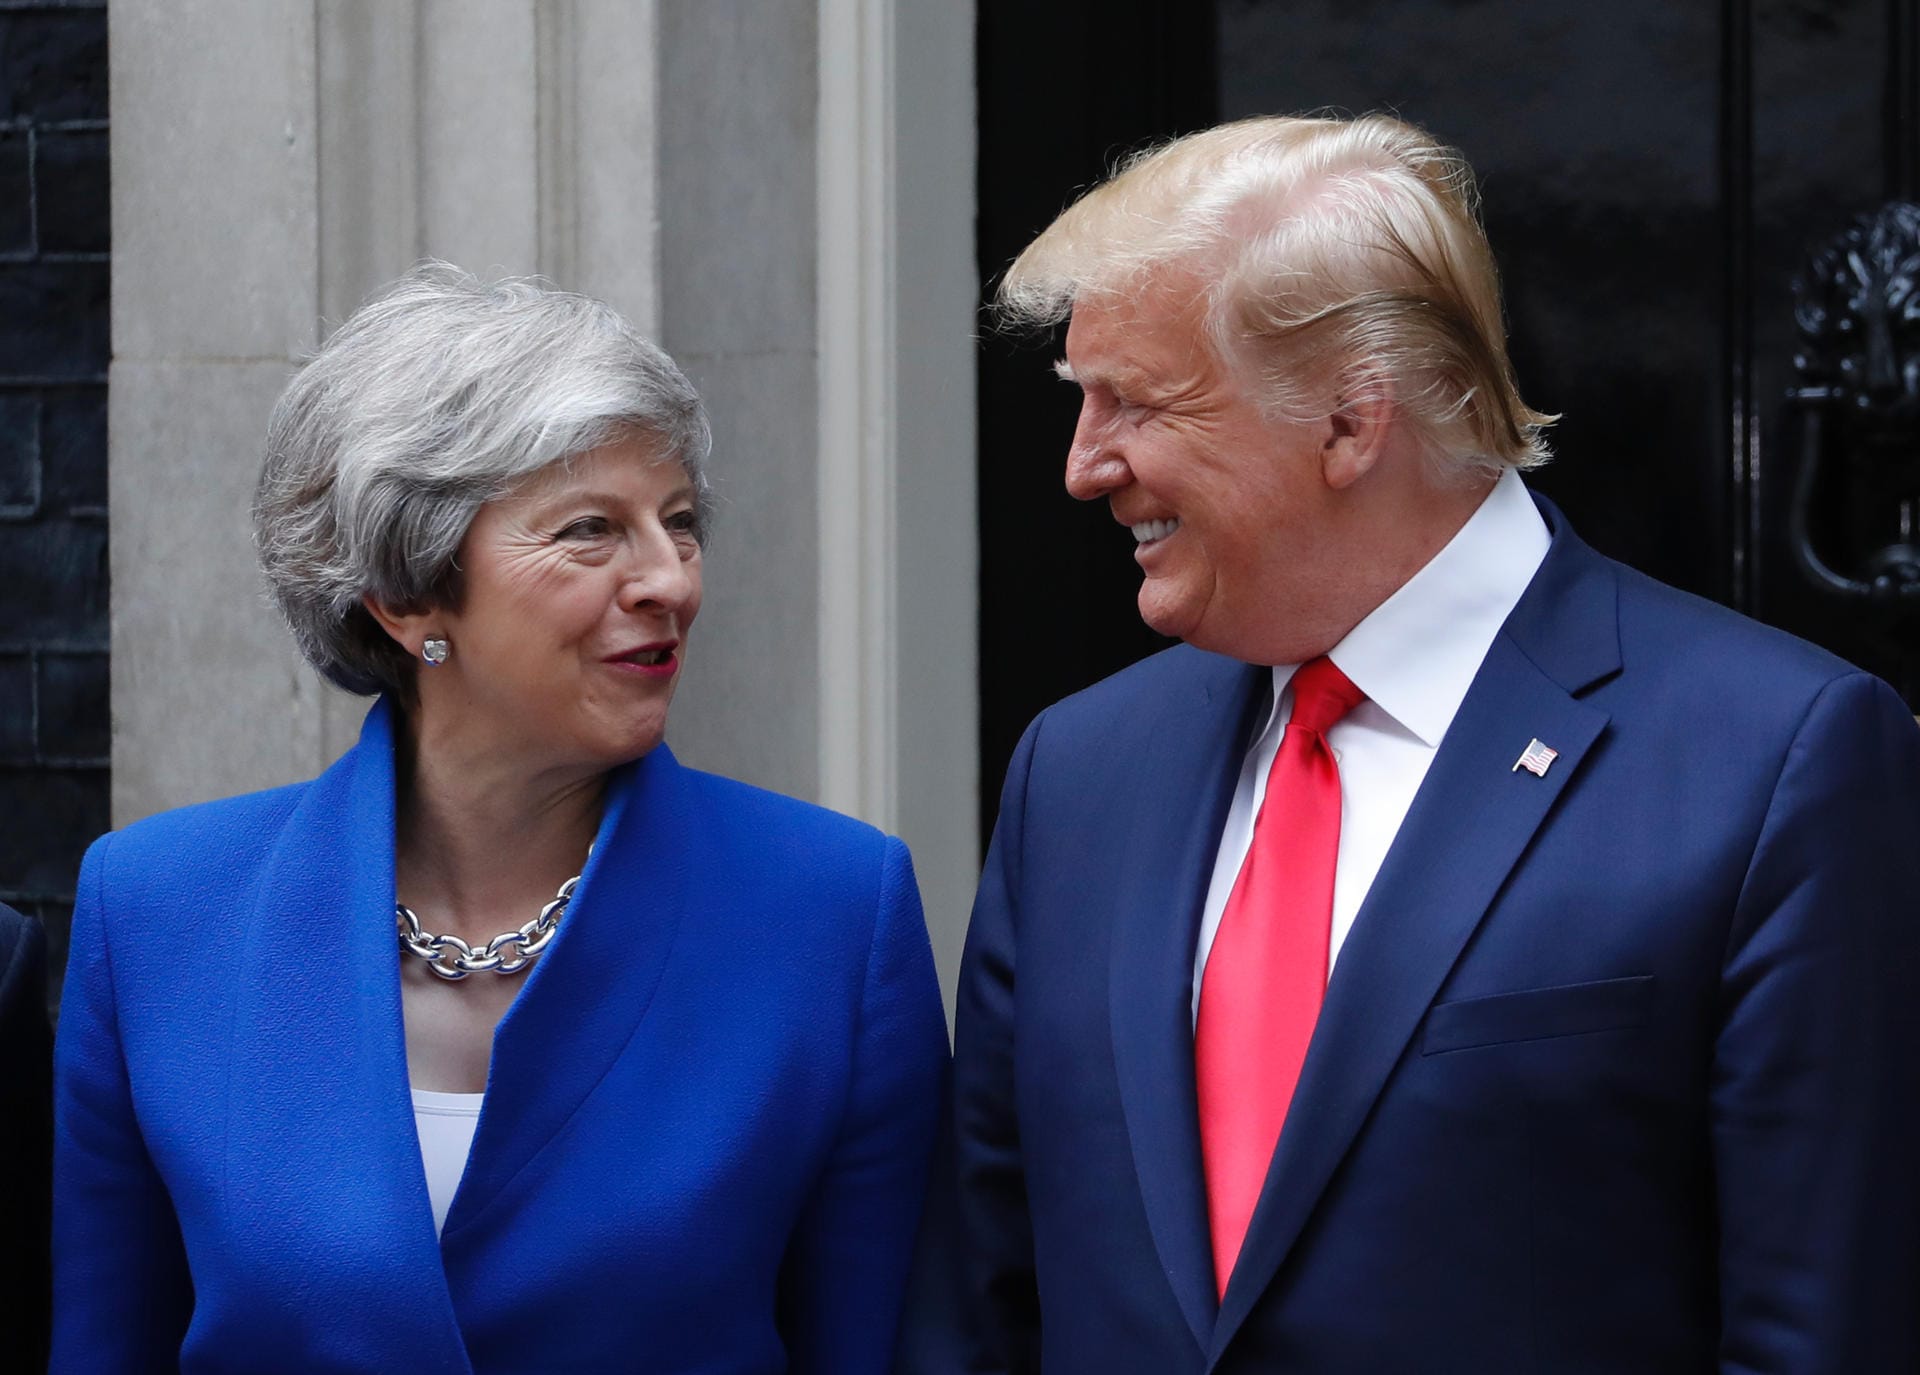 Am Dienstag traf Donald Trump dann die scheidende britische Premierministerin Theresa May. Auch wenn beide hier vergnügt aussehen: Das Treffen war von Differenzen geprägt und einen Handschlag zwischen May und Trump gab es bei der Begrüßung auch nicht.